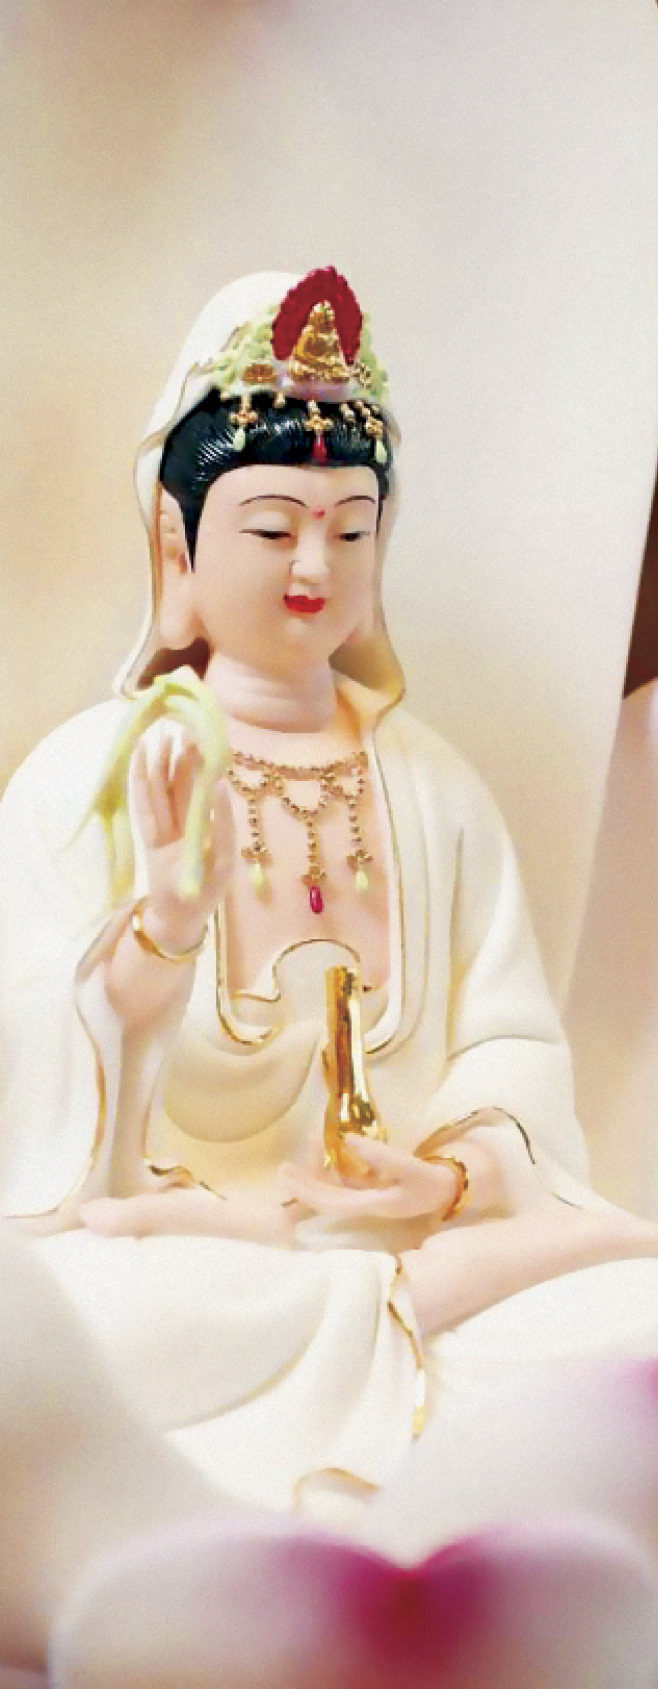 Đức tính của Bồ tát Quán Thế âm trong tôn dung của người nữ (ĐĐ. Thích Phước Tánh) - Tạp Chí Văn Hóa Phật Giáo